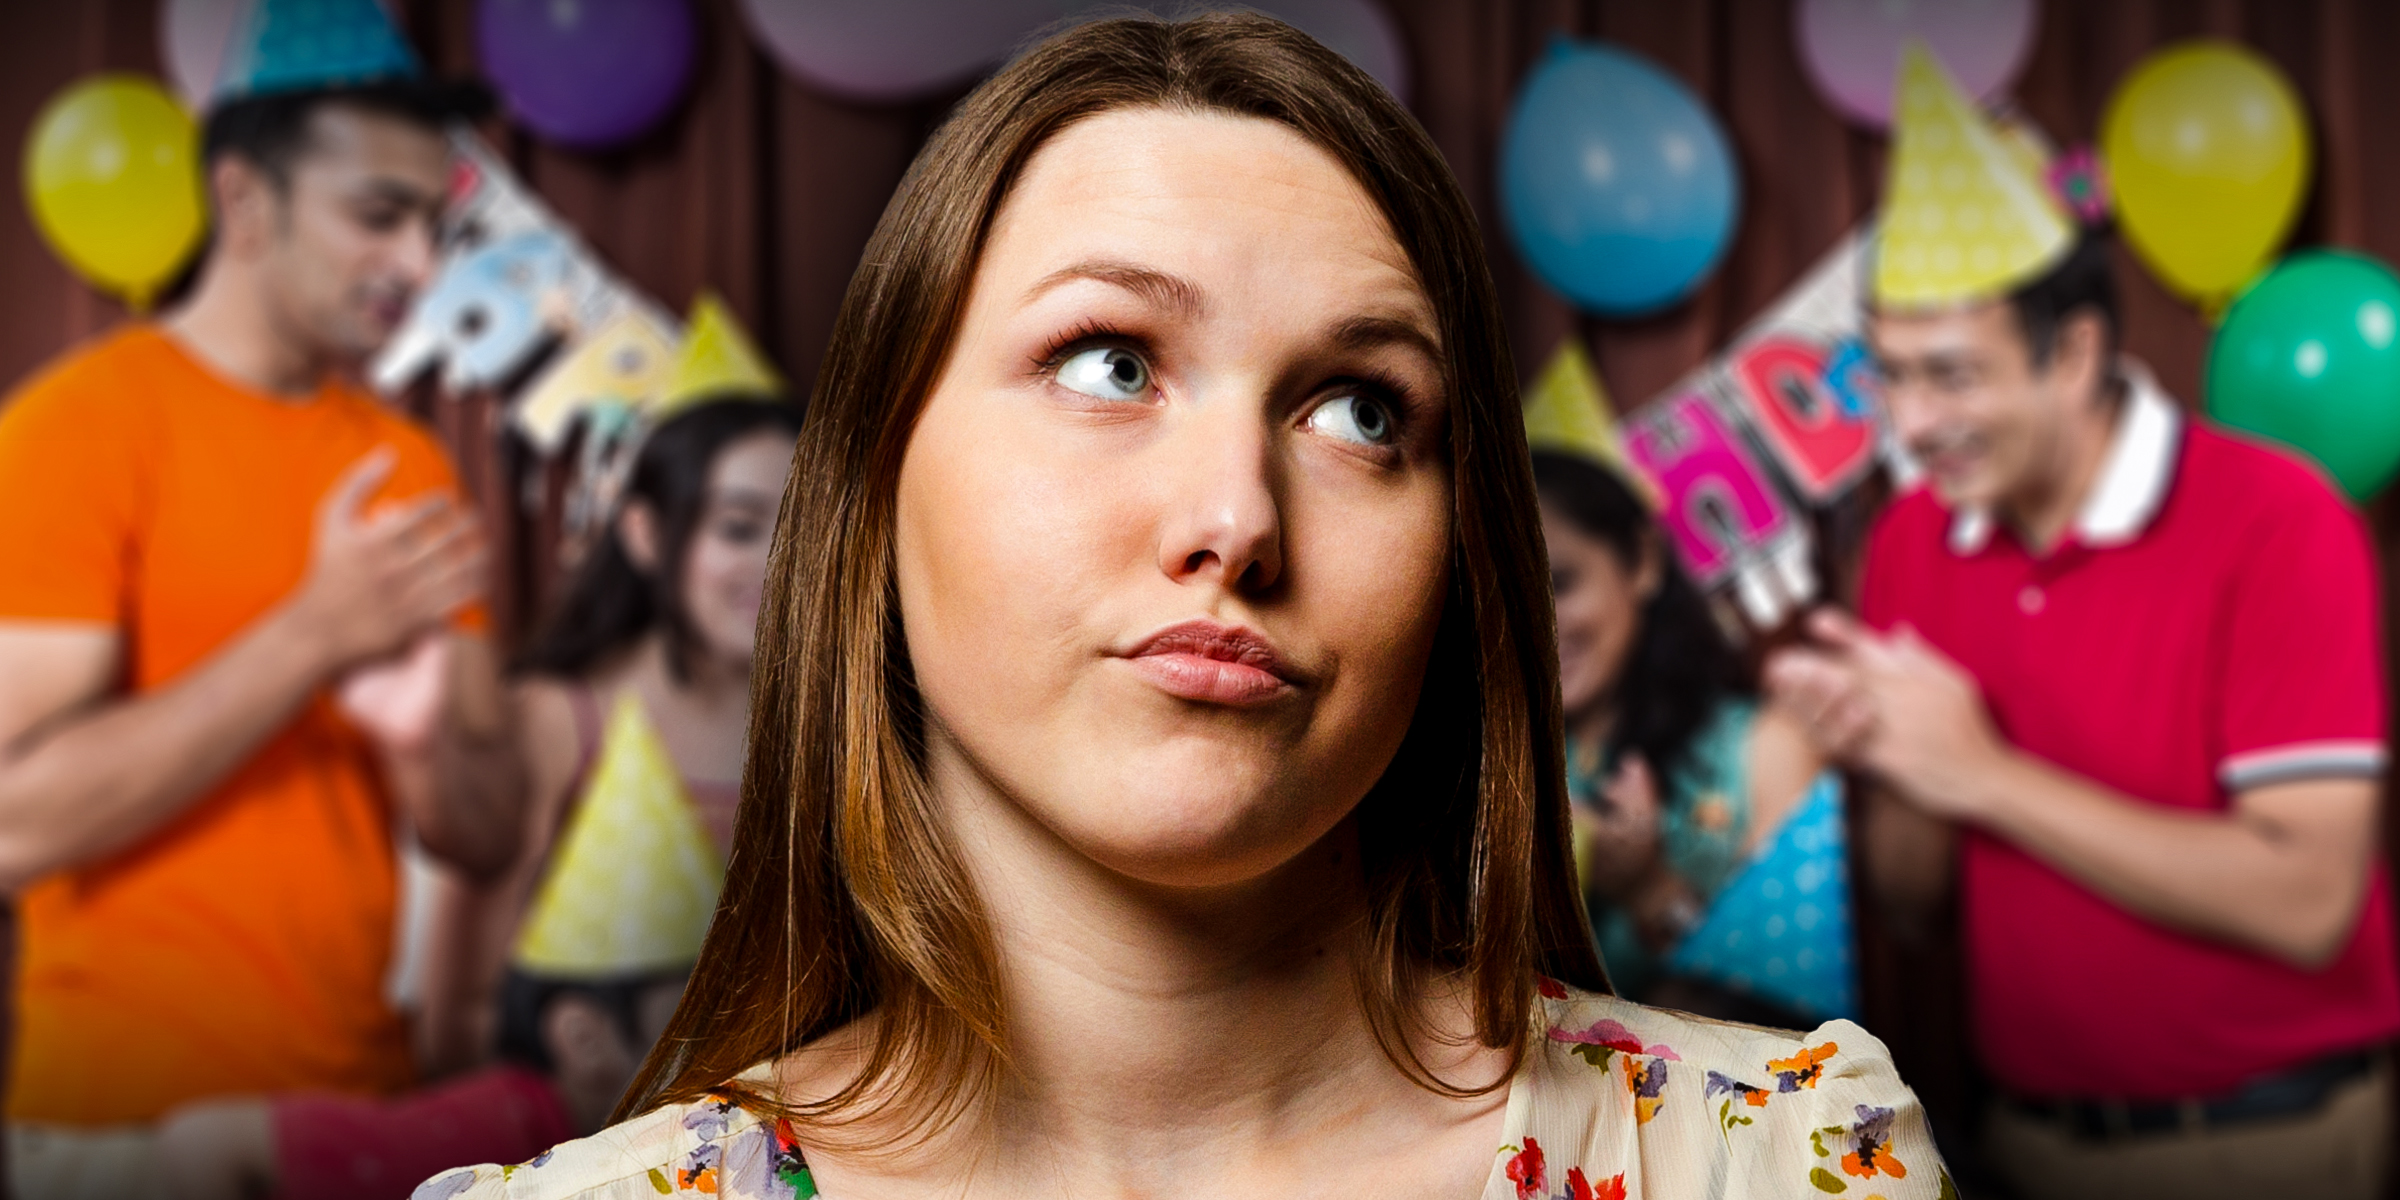 A birthday party | An arrogant teen girl | Source: Shutterstock